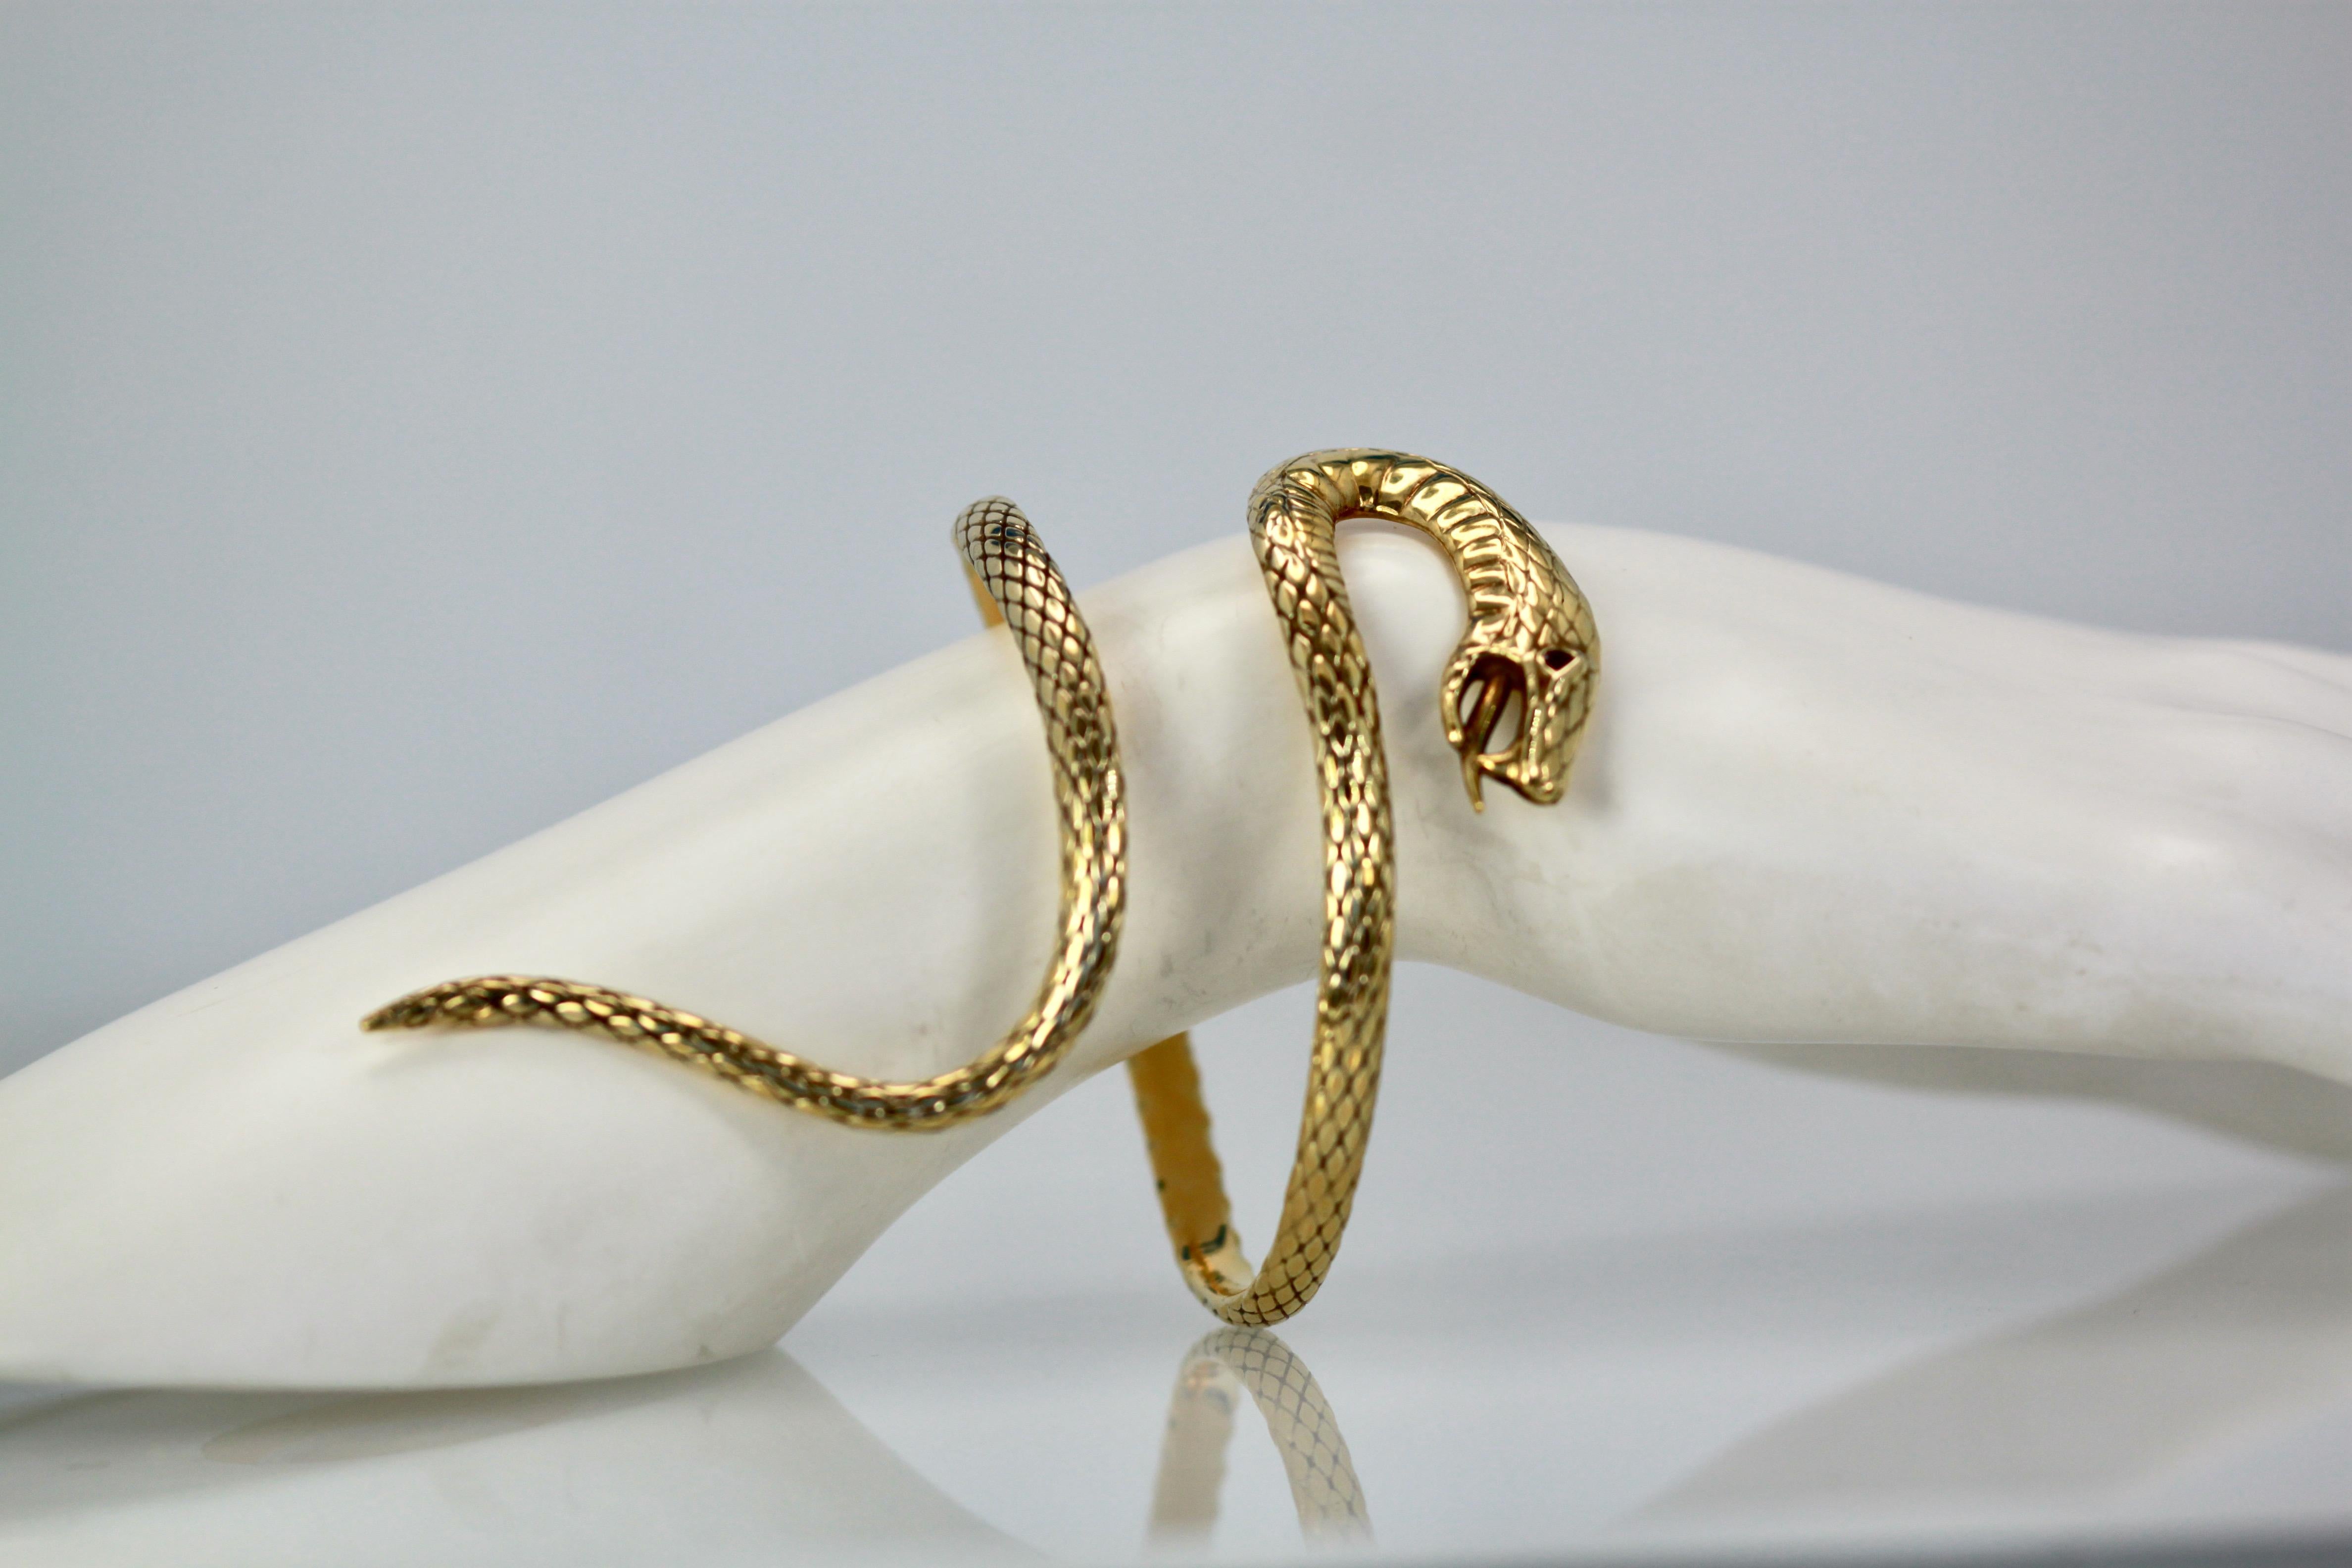 Artisan 14k Yellow Gold Etched Snake Bracelet Attrib. Stephen Webster For Sale